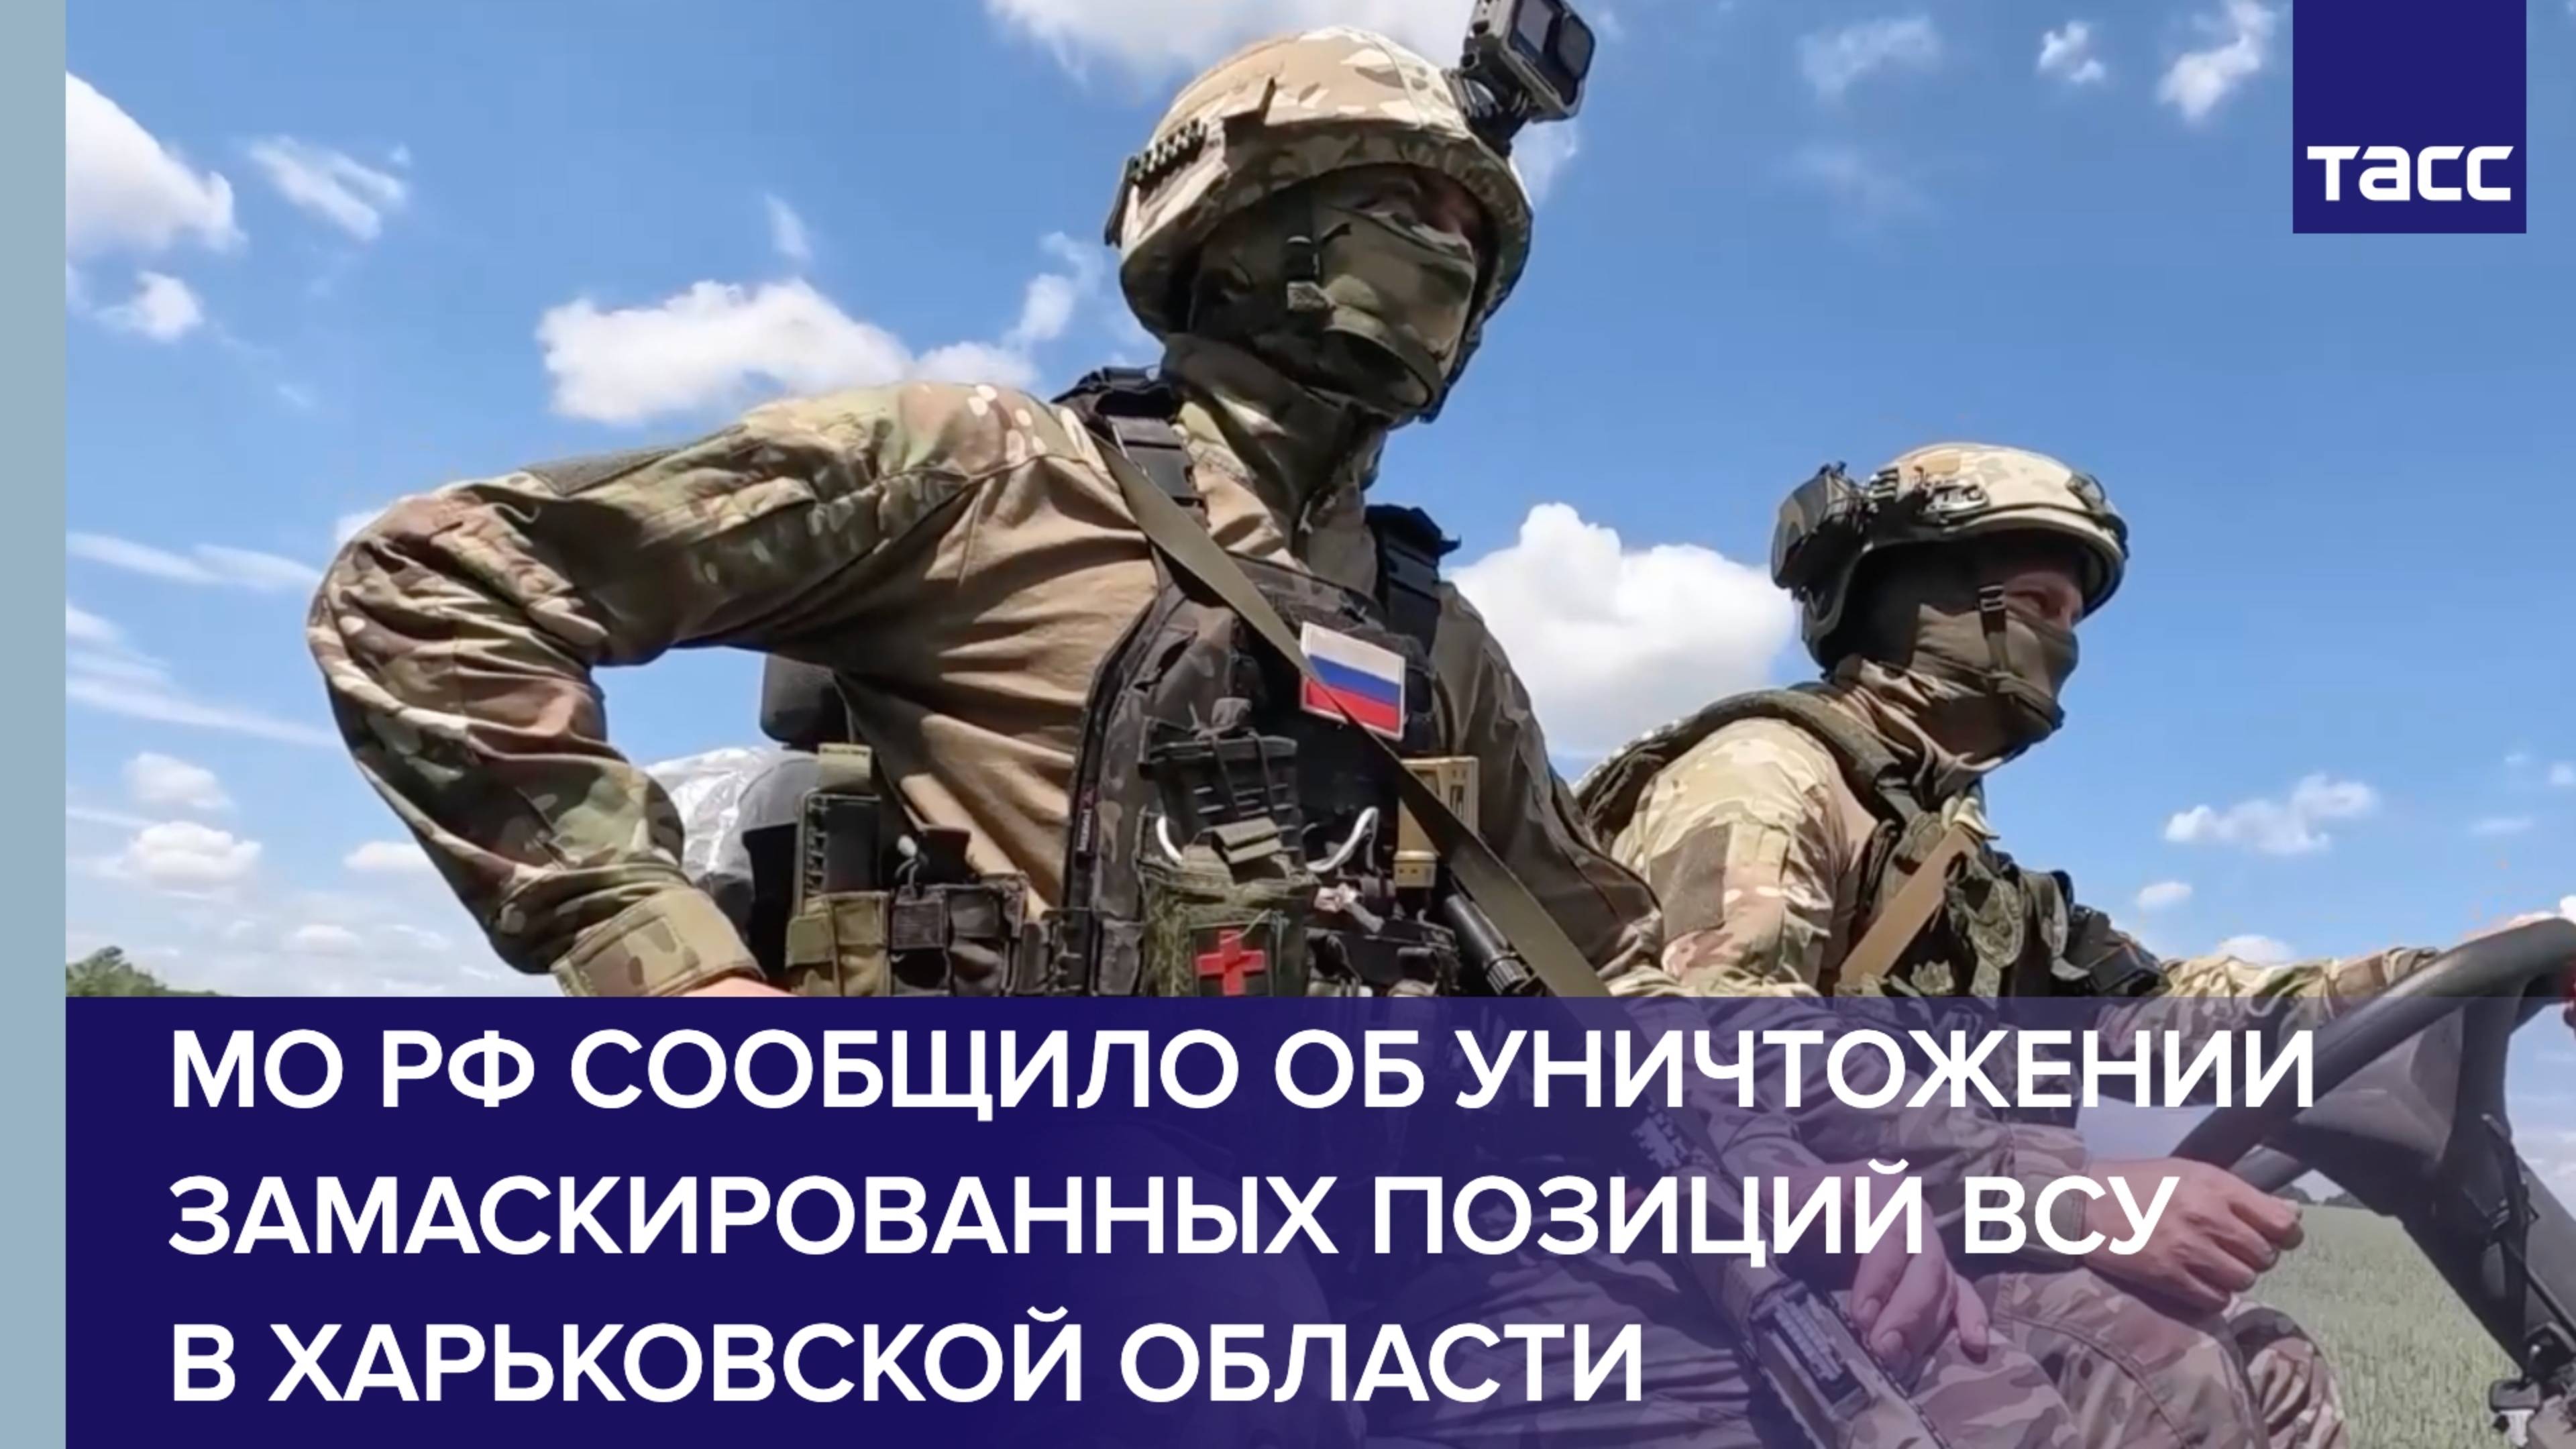 МО РФ сообщило об уничтожении замаскированных позиций ВСУ в Харьковской области